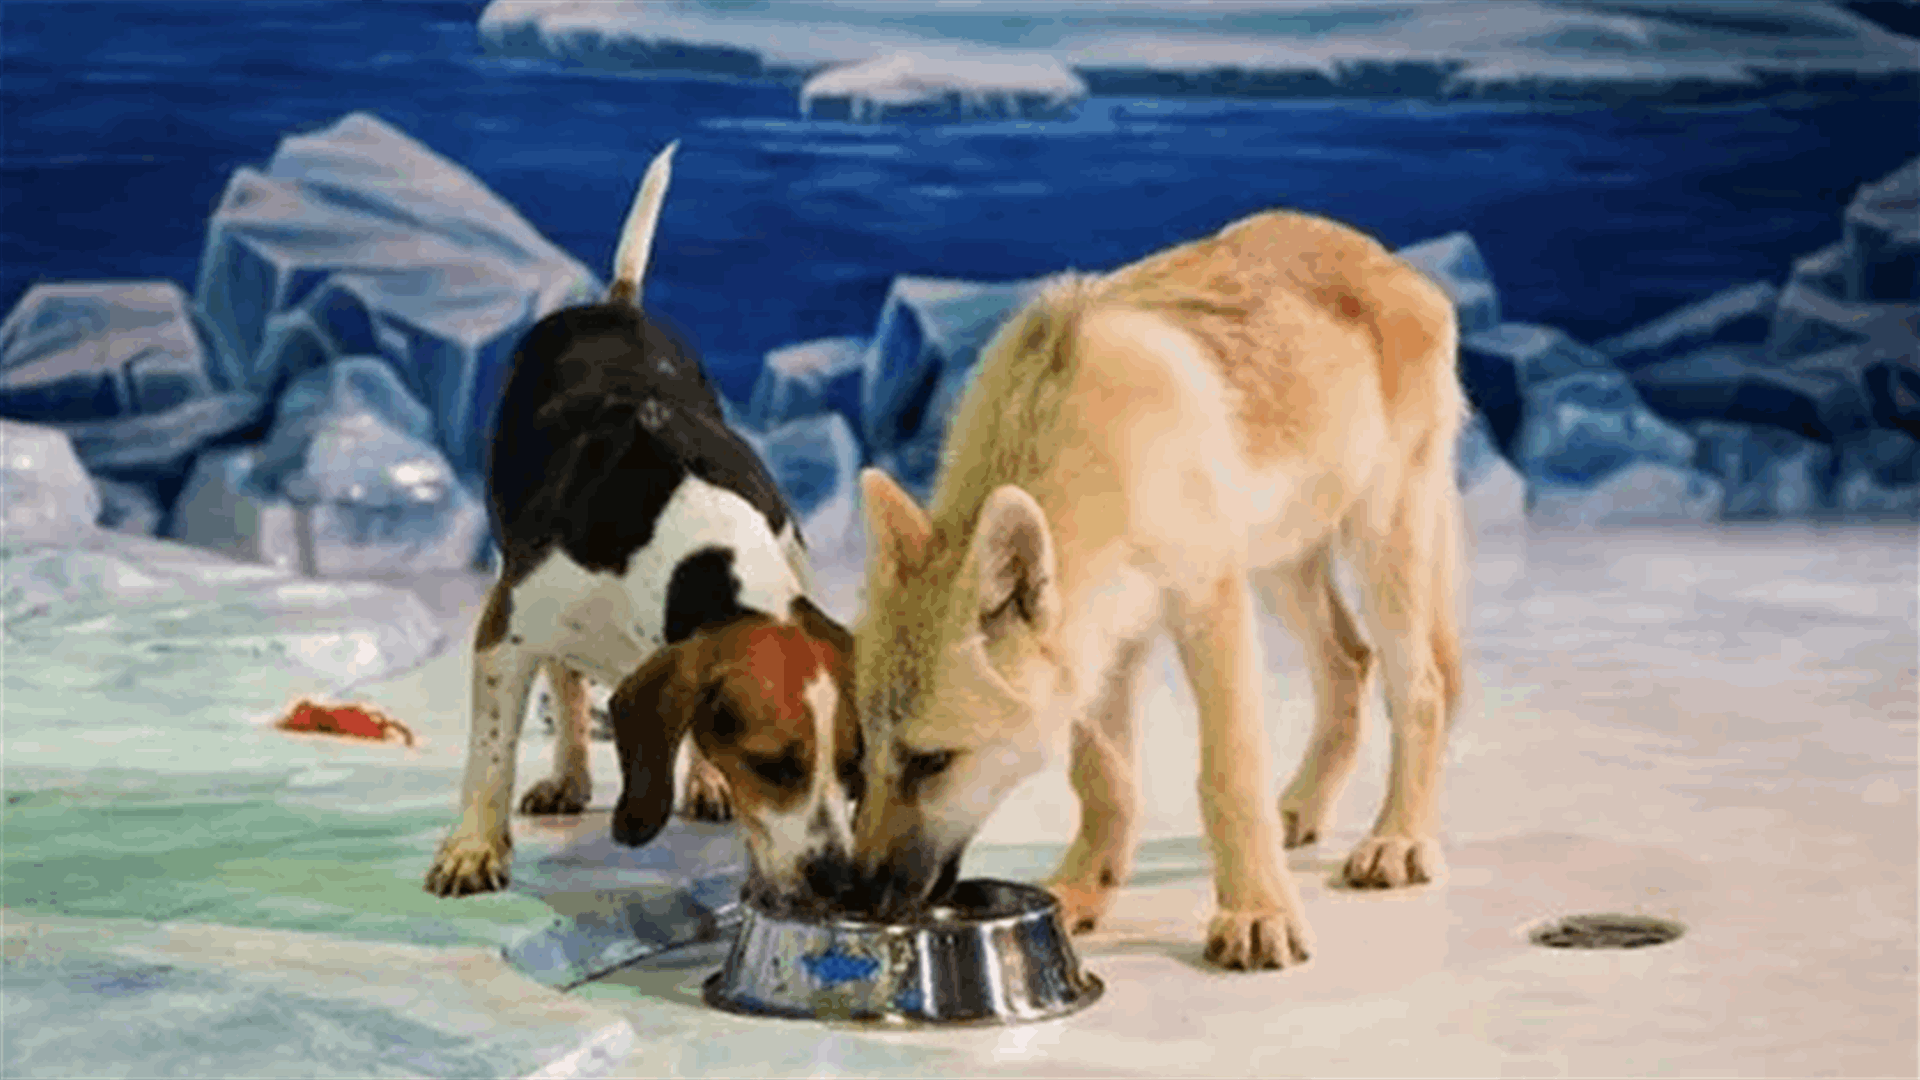 الأول من نوعه في العالم... استنساخ ذئب قطبي من كلب في الصين! (فيديو)